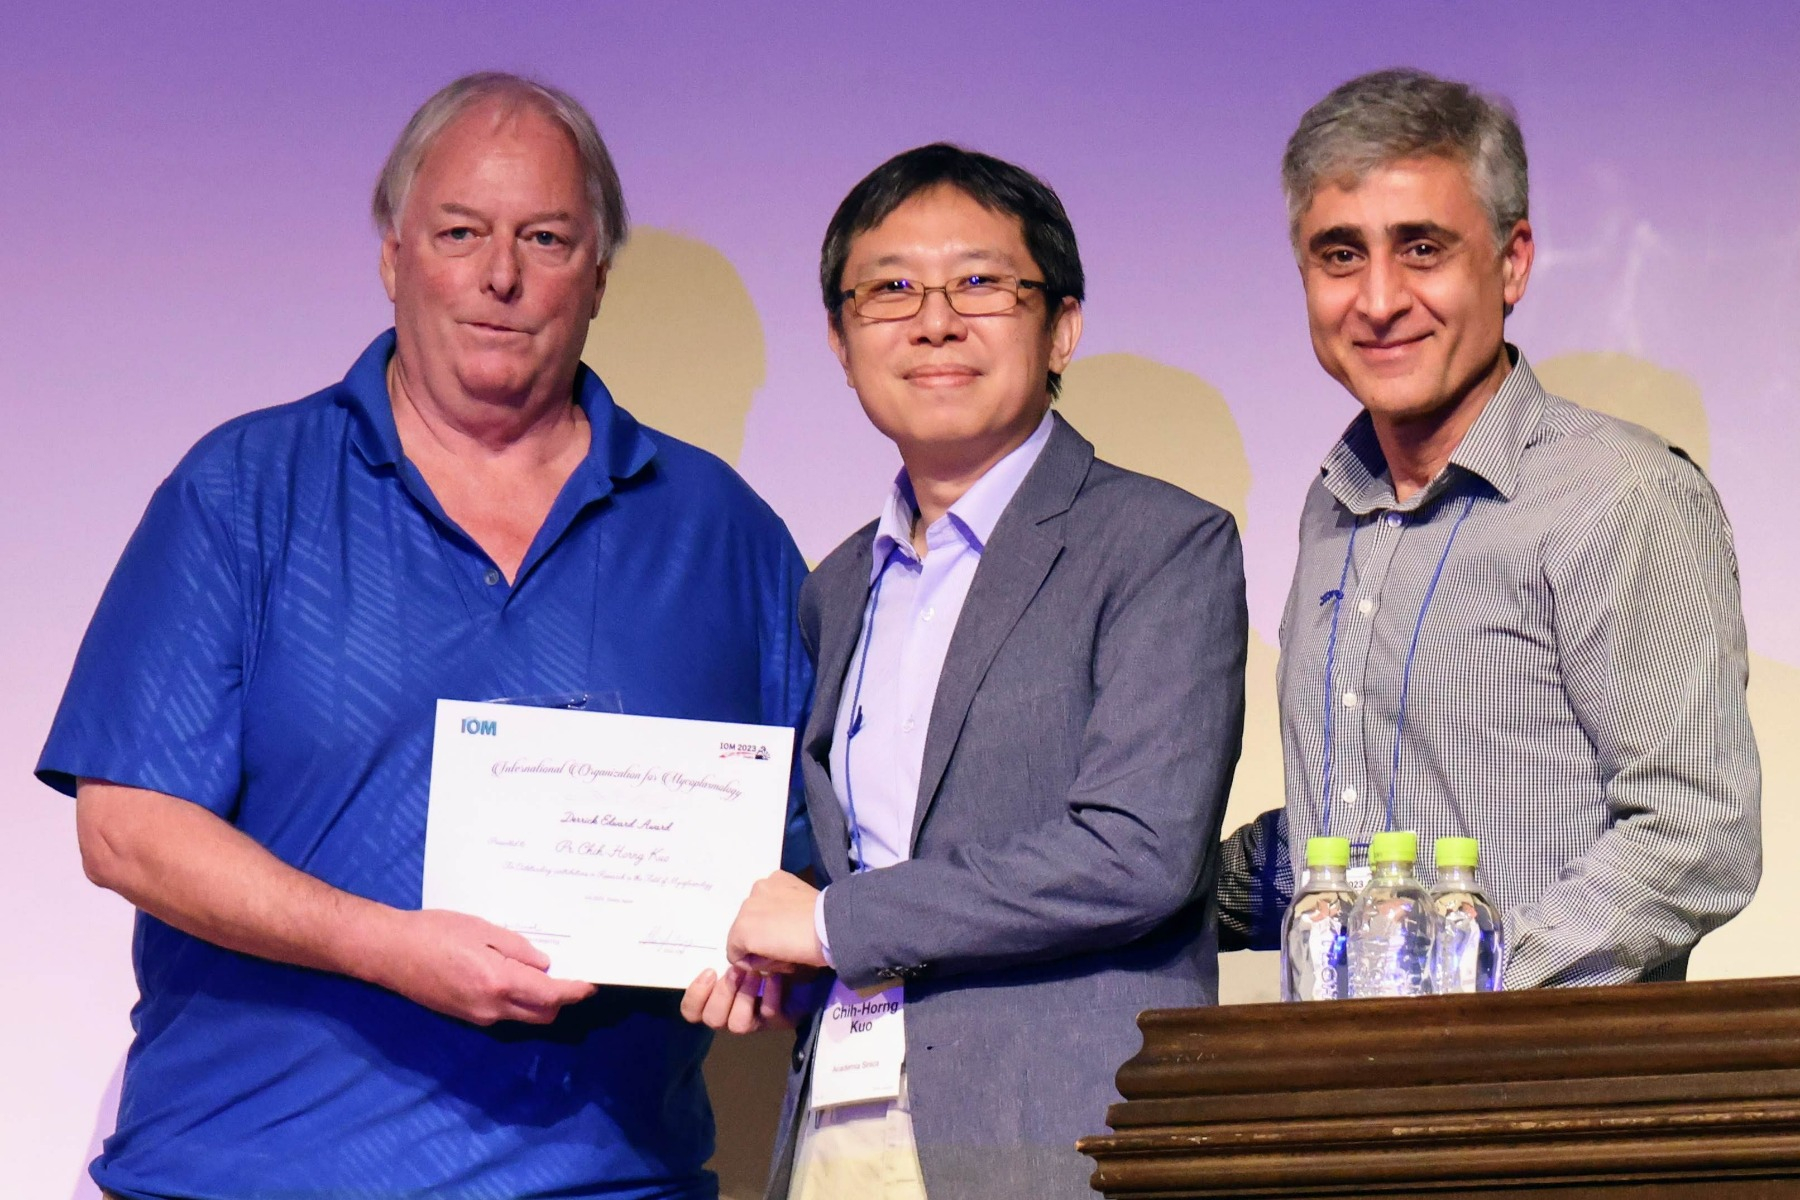 郭志鴻研究員（中）獲邀出席於日本大阪舉行的國際學術會議領獎，頒獎者為國際黴漿菌學組織理事長 Dr. Steven Geary （左）及獎項委員會主席 Dr. Amir Hadjinoormohammadi （右）。